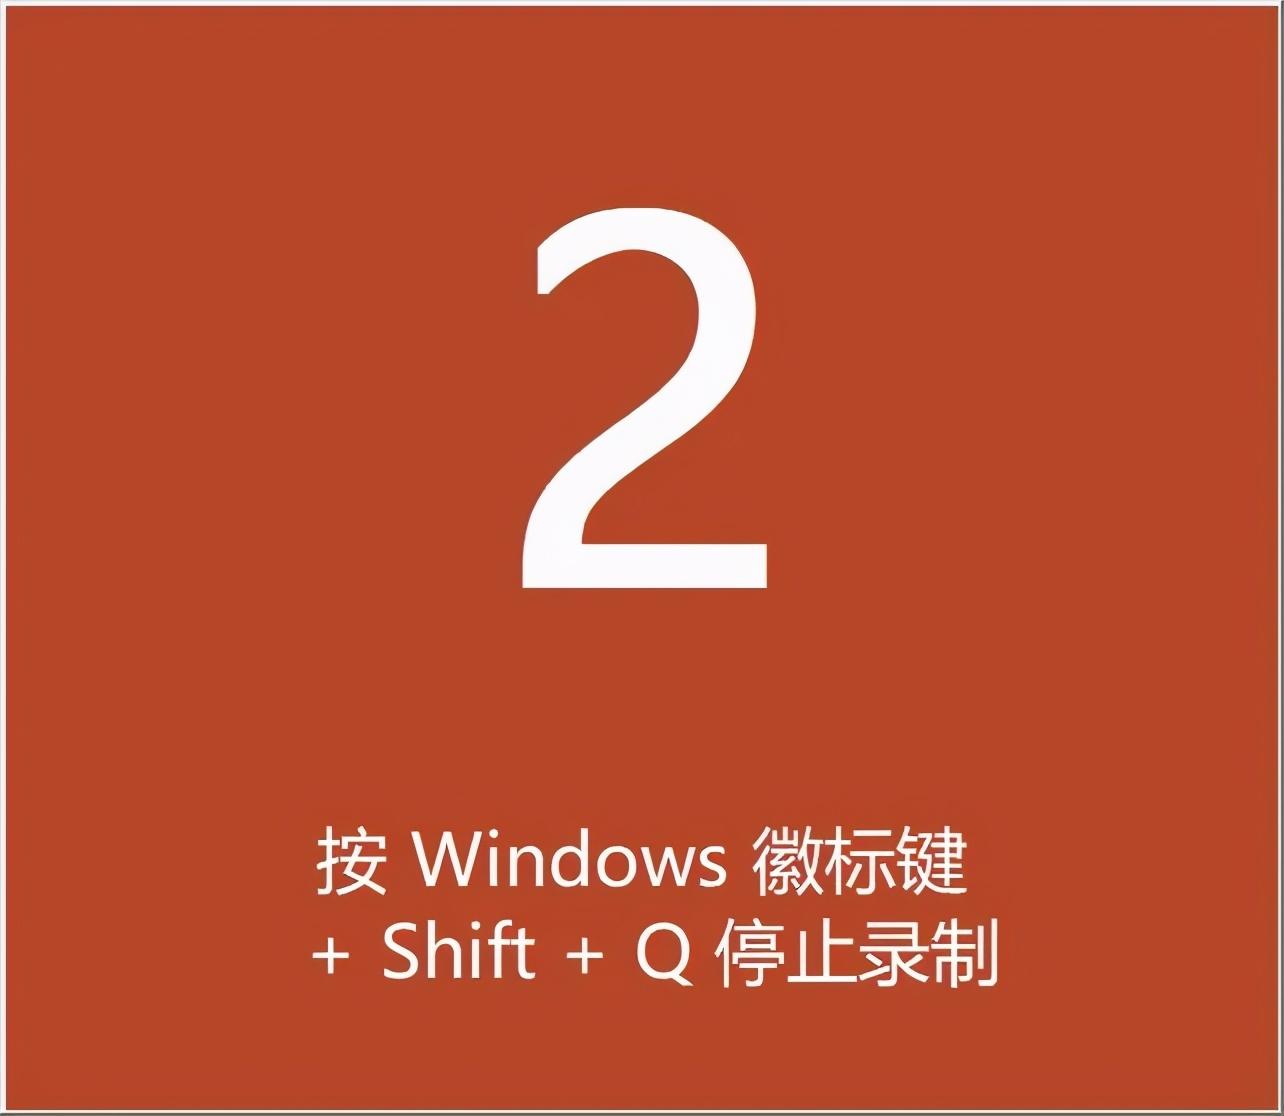 Windows10录屏软件插图新简7